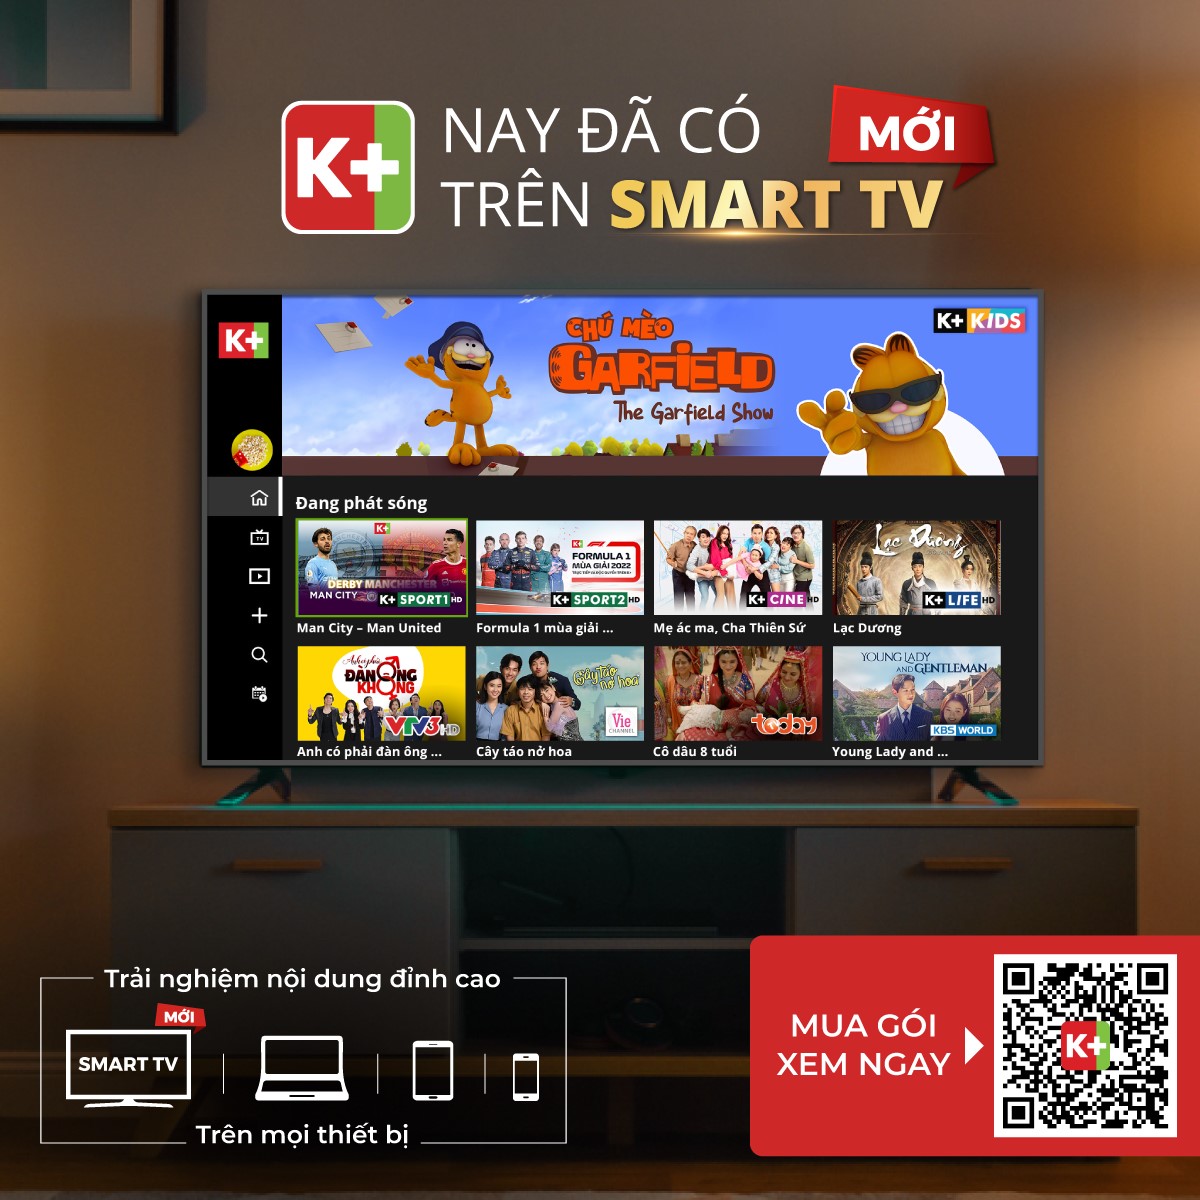 App K+ trên smart tv